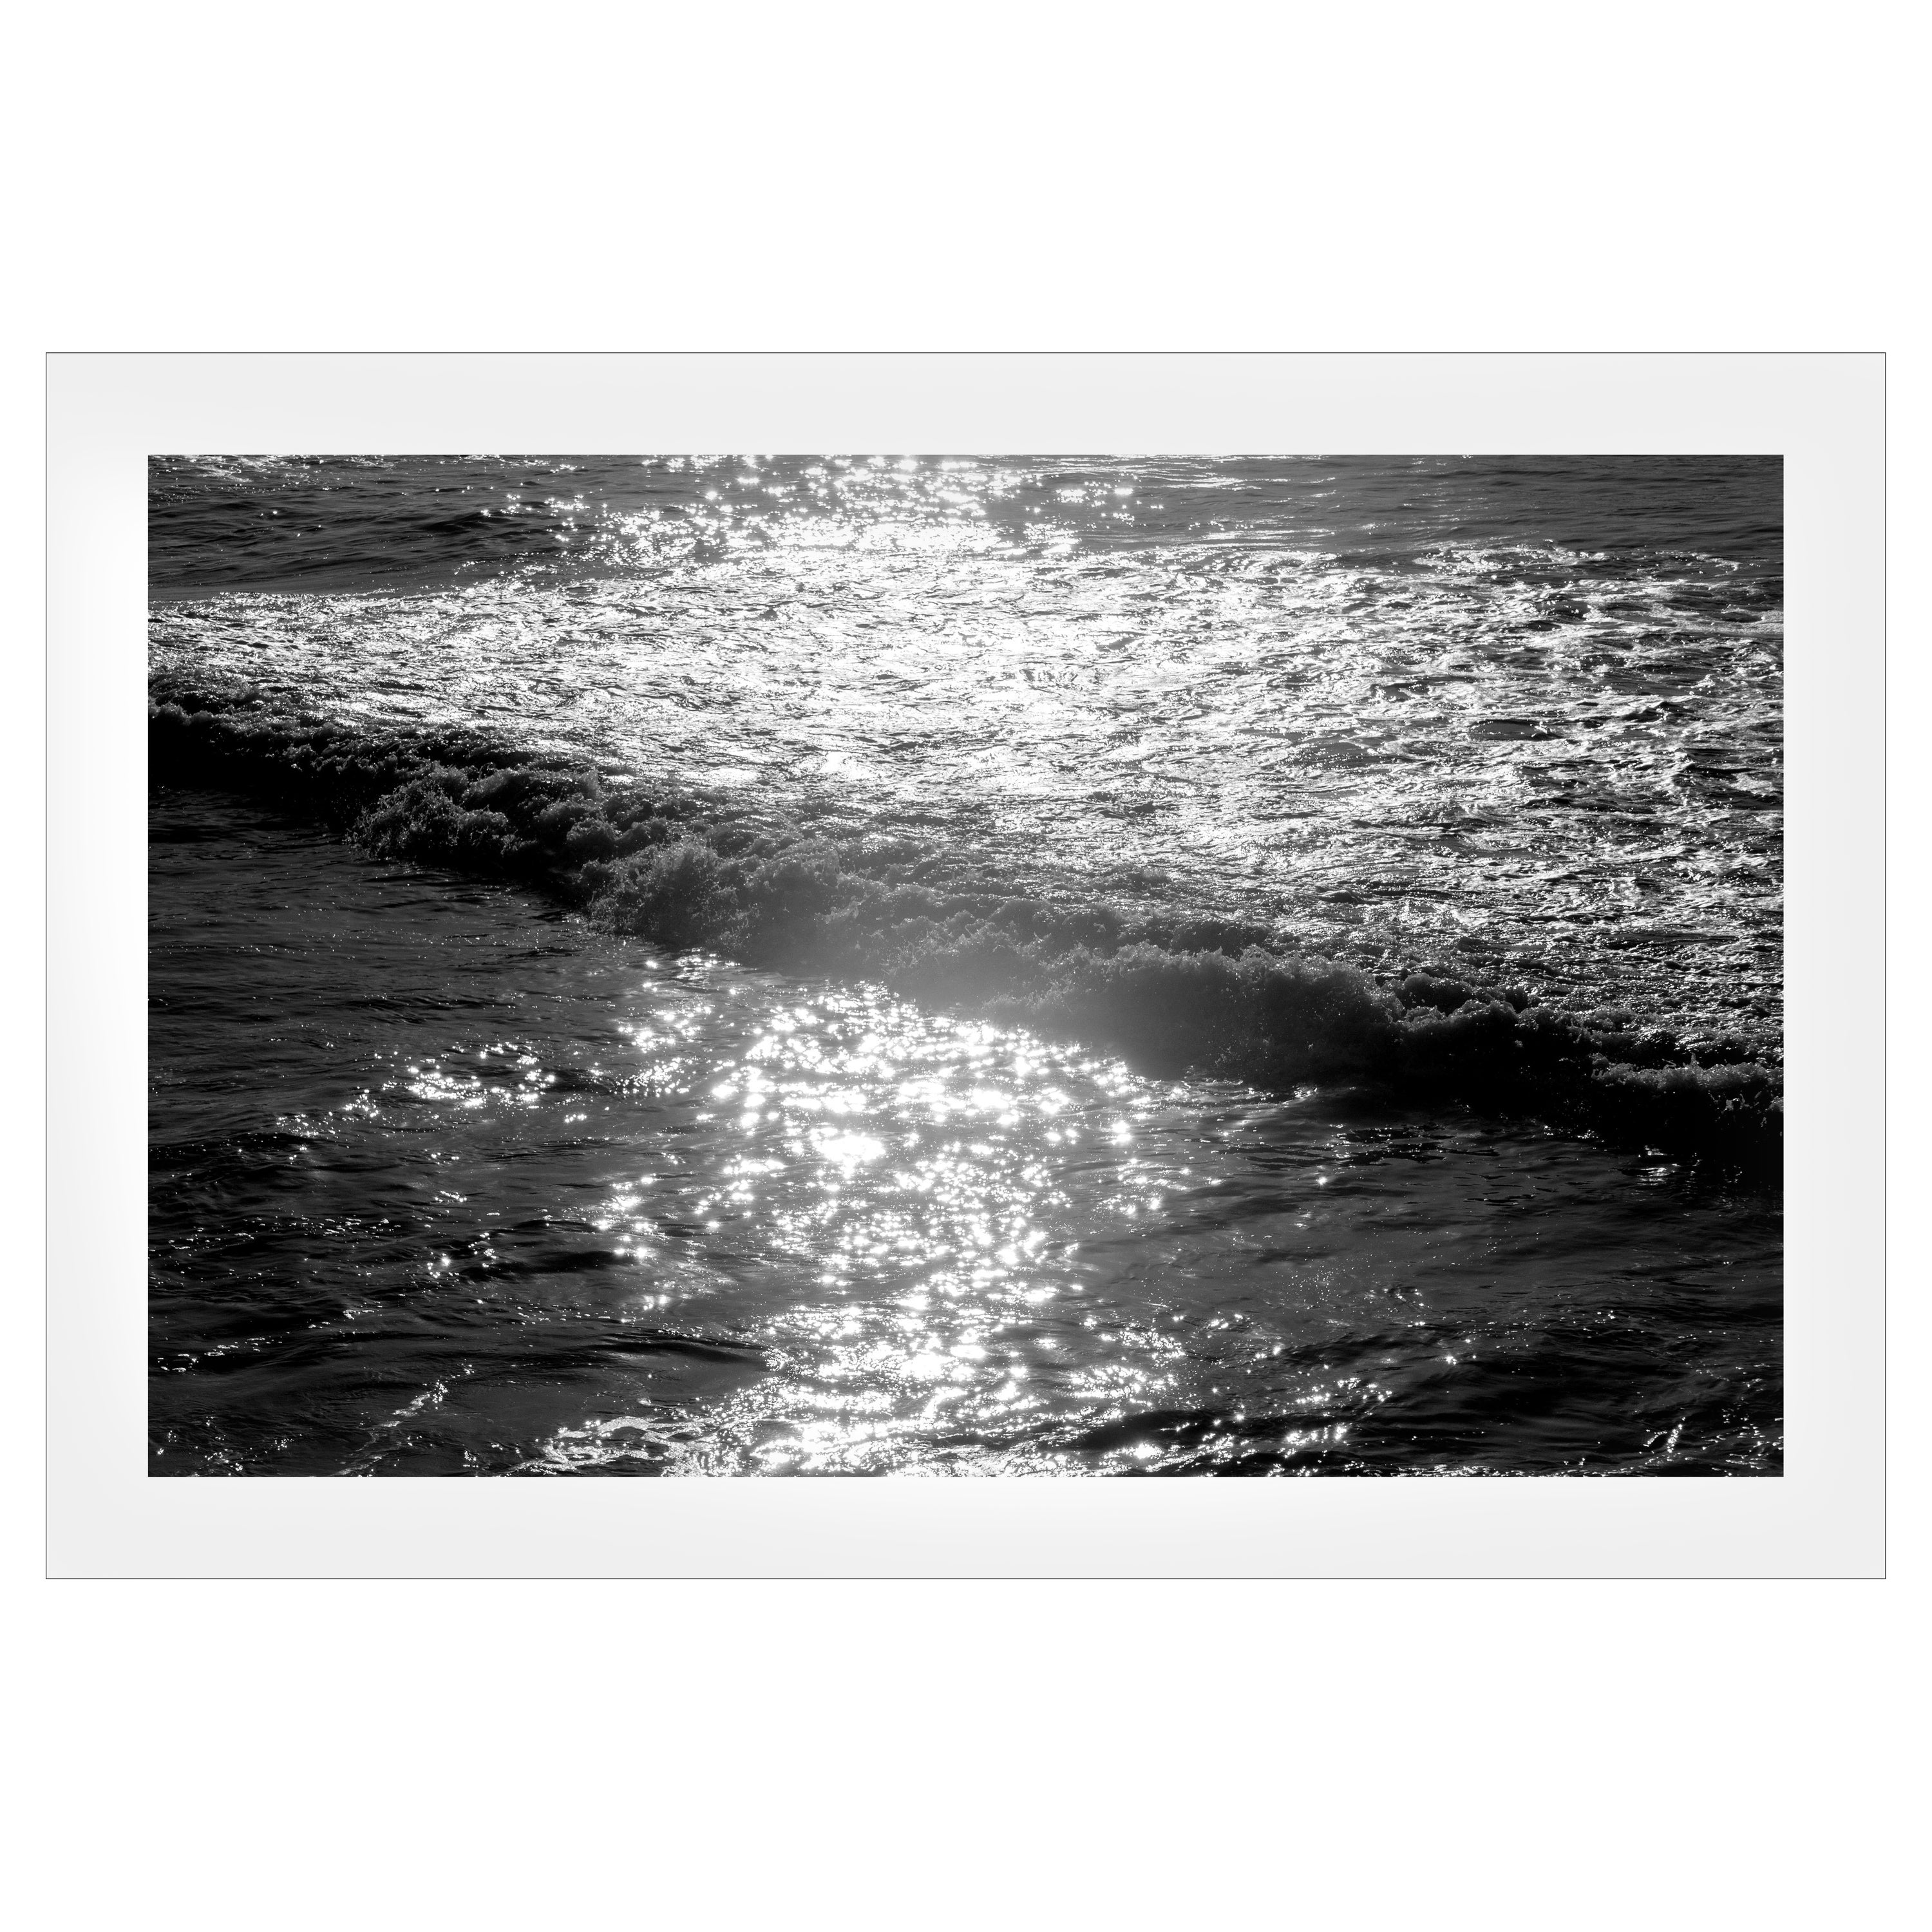 Landscape Photograph Kind of Cyan - Reflet de l'eau, impression giclée noir et blanc d'un paysage marin, vagues du coucher de soleil sur le Pacifique